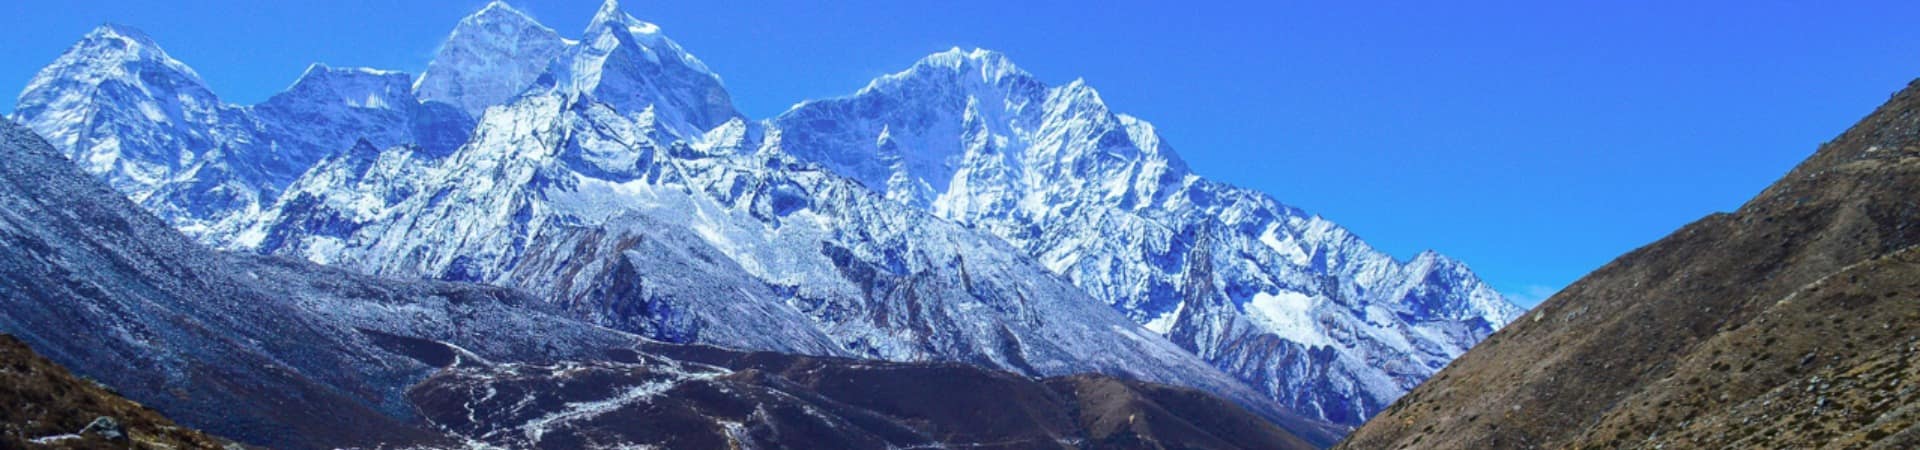 Destino viagem Himalaia Nepal turismo